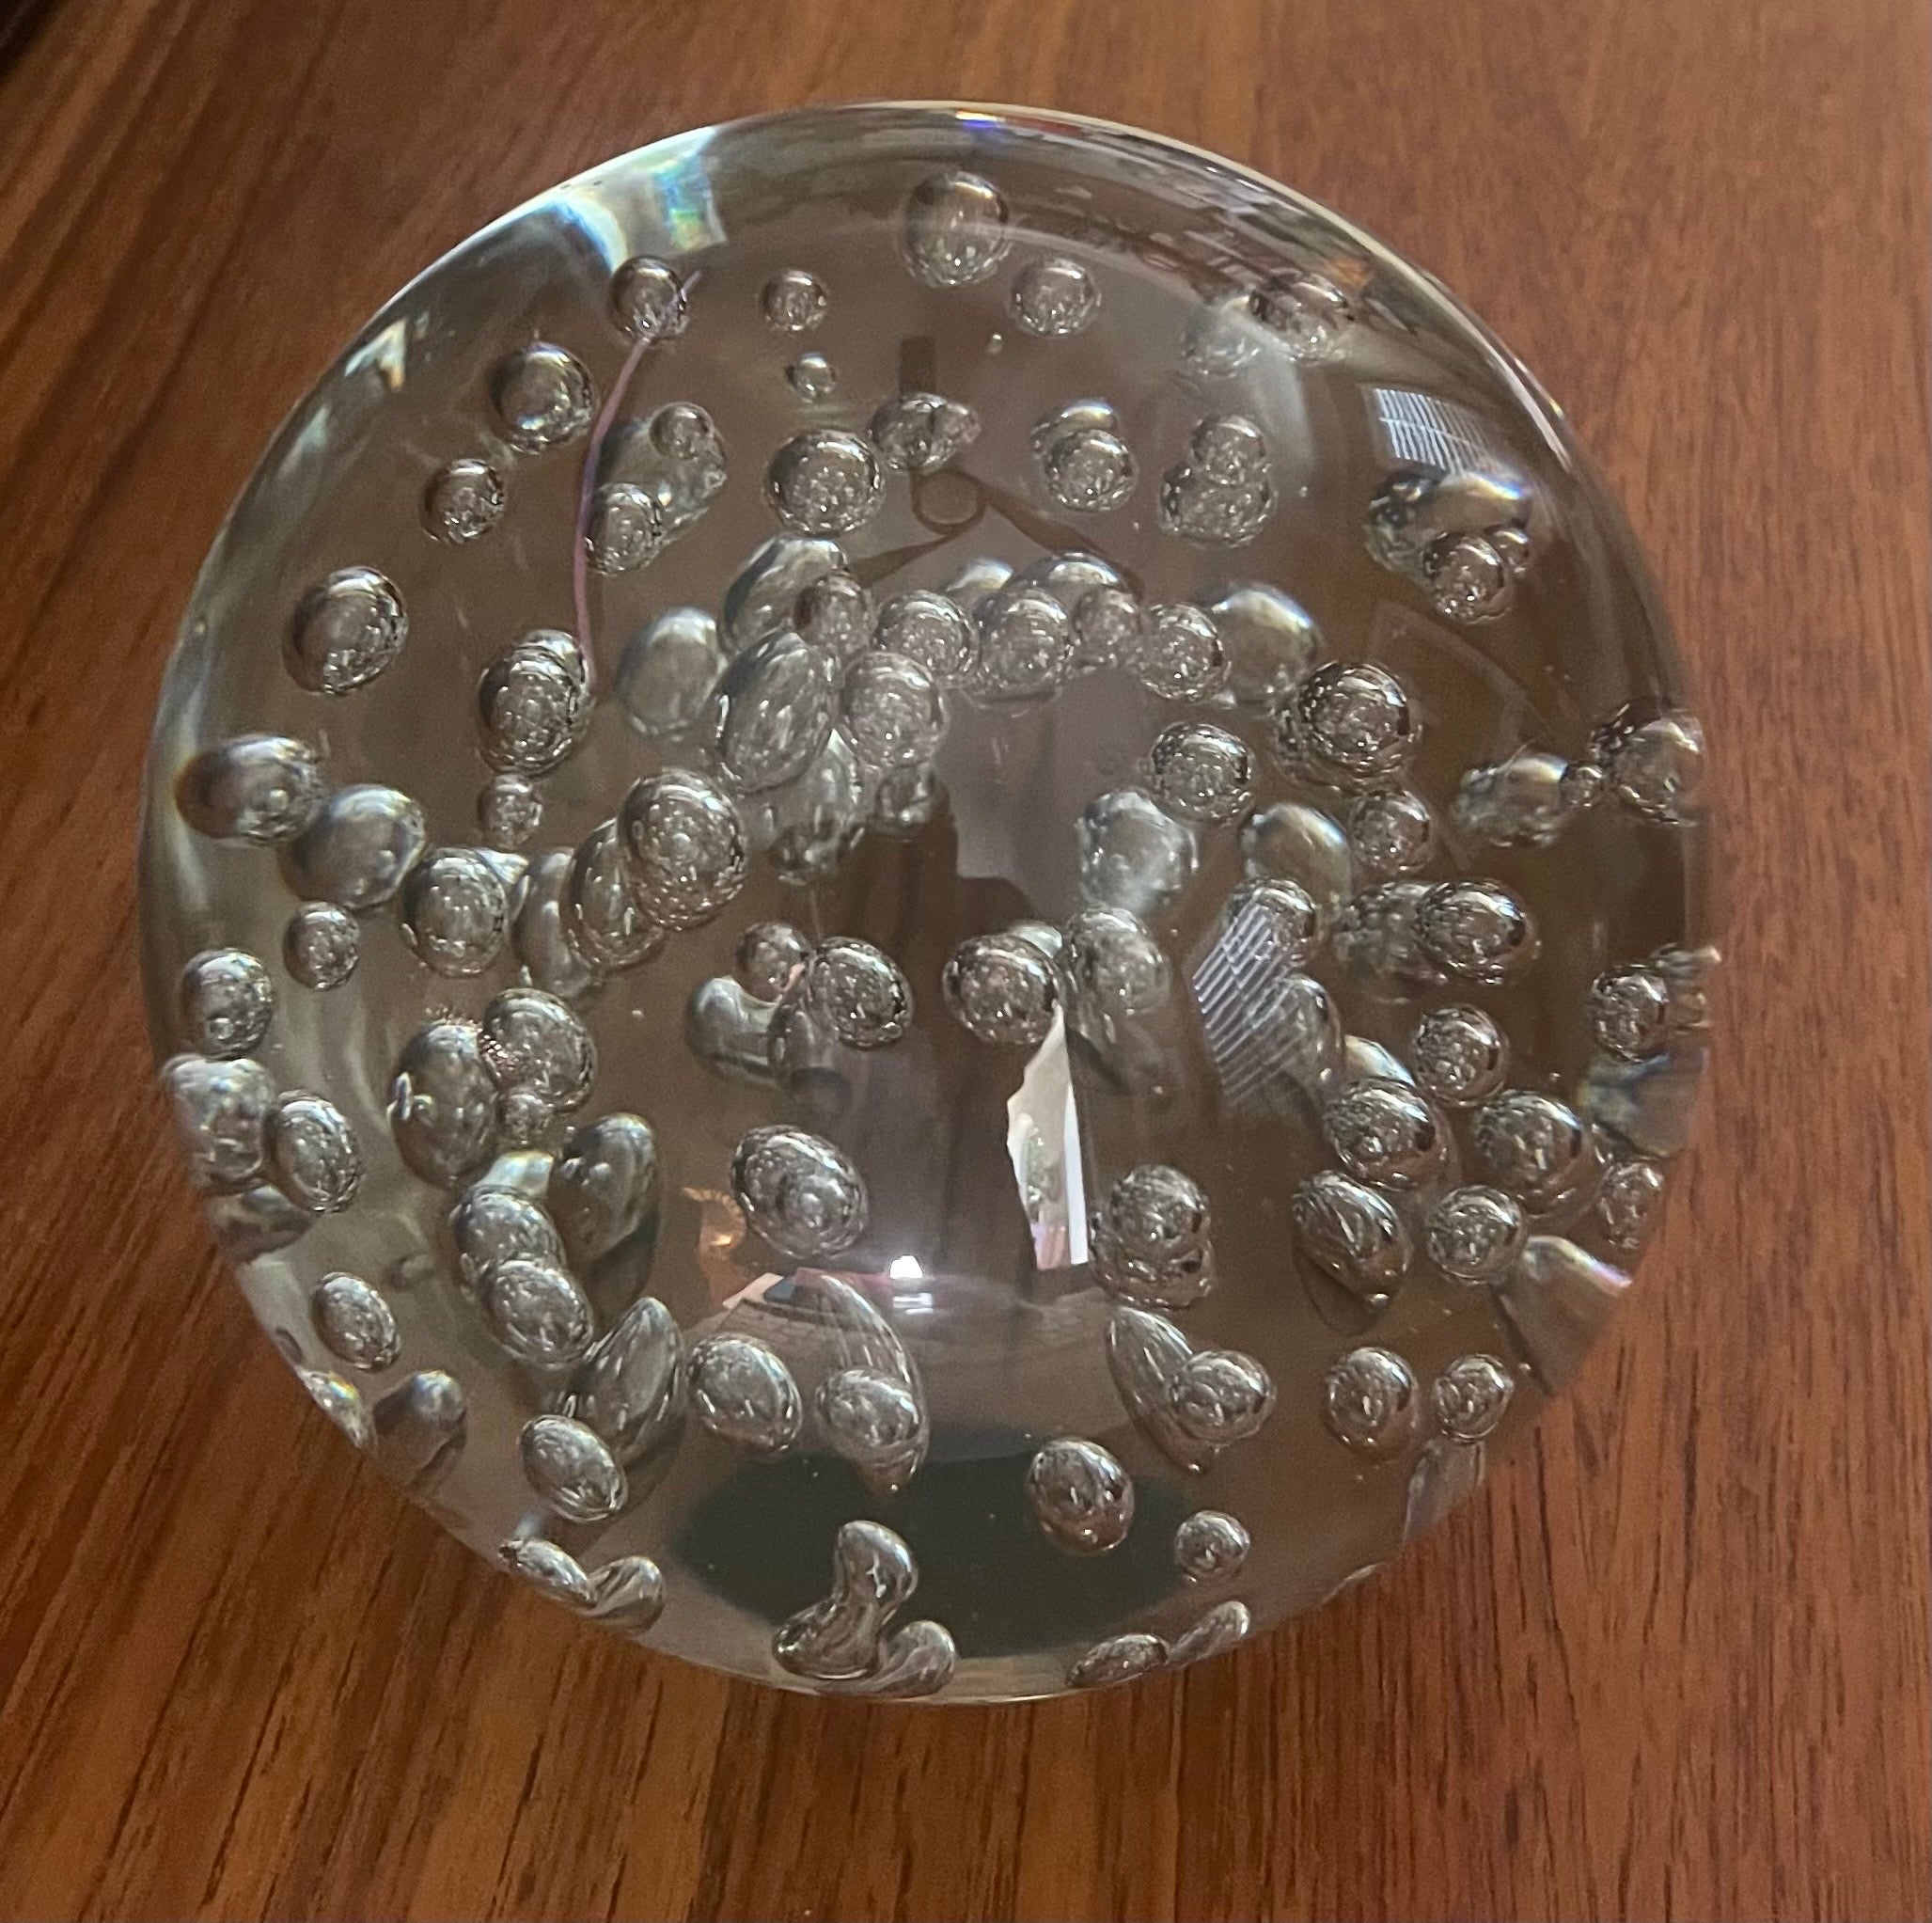 Sculpture orbe ou presse-papier en verre d'art transparent avec bulles, circa 1990. L'orbe est recouvert de bulles d'air internes et mesure 6.6 